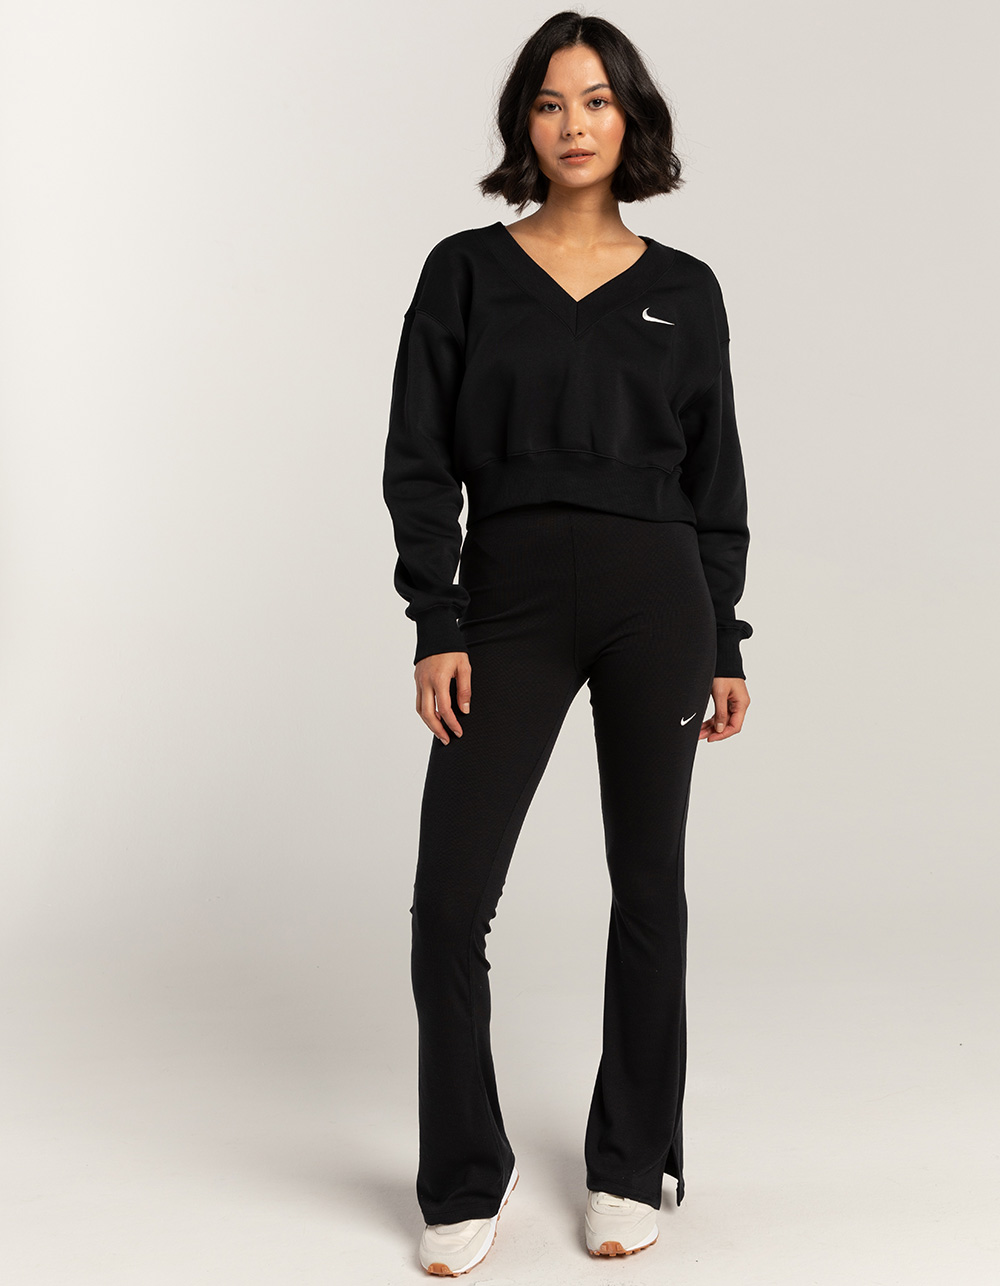 Sportswear Favorite Tight Flare Leggings - Teens by Nike Online